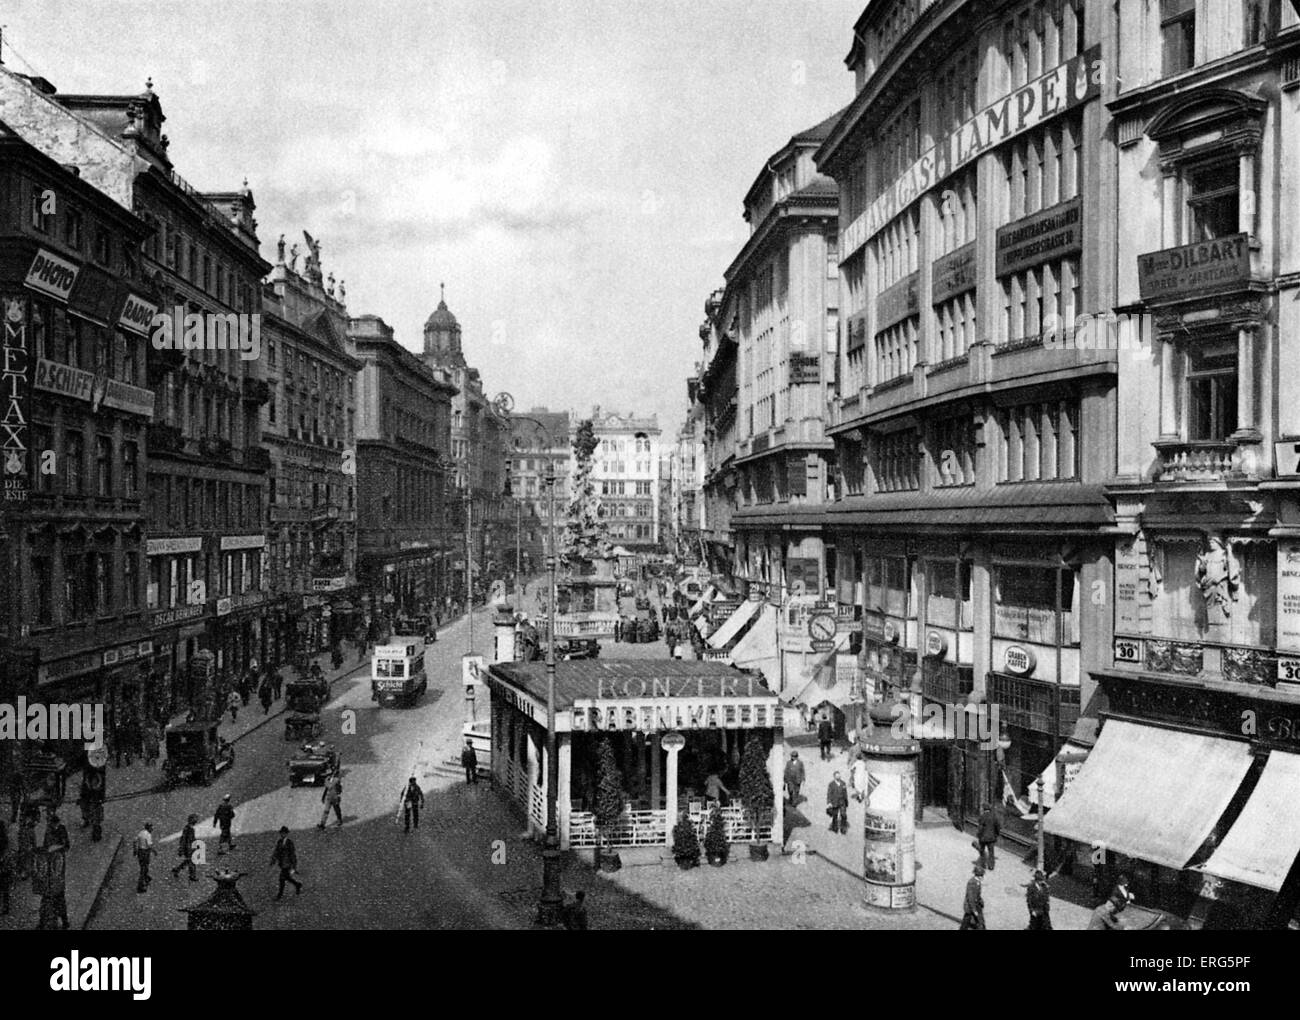 Der Graben, Vienna, Austria, 1920s. Main street in Vienna's first district (literally 'the trench'). Street scene. Stock Photo